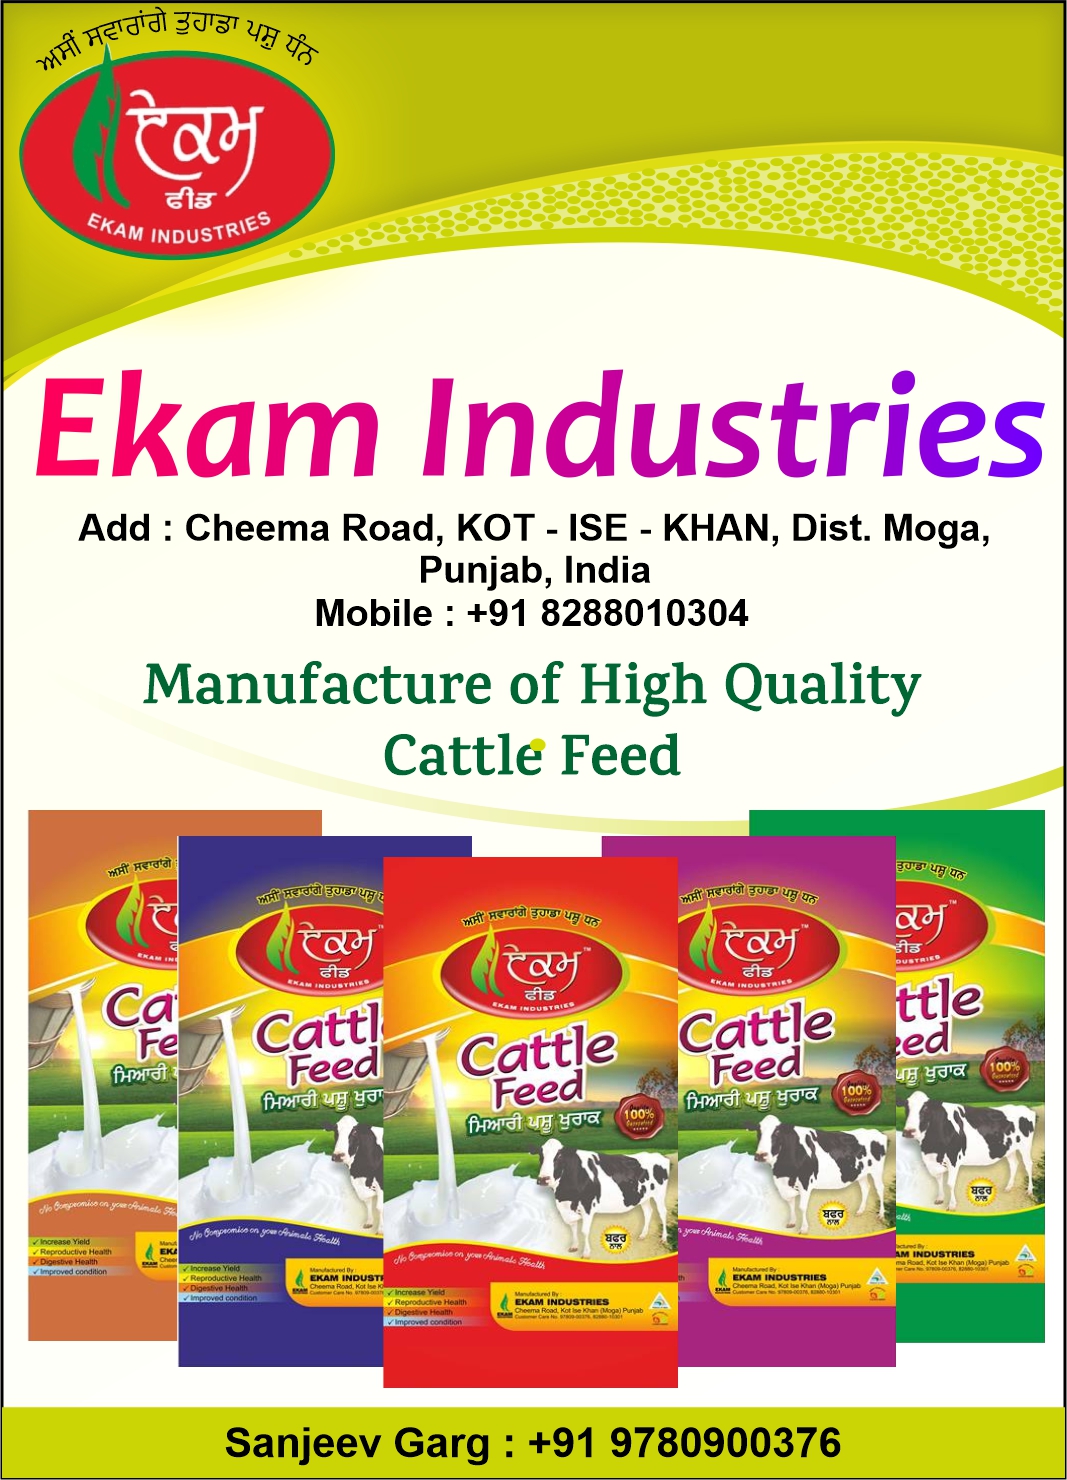 Ekam Industries